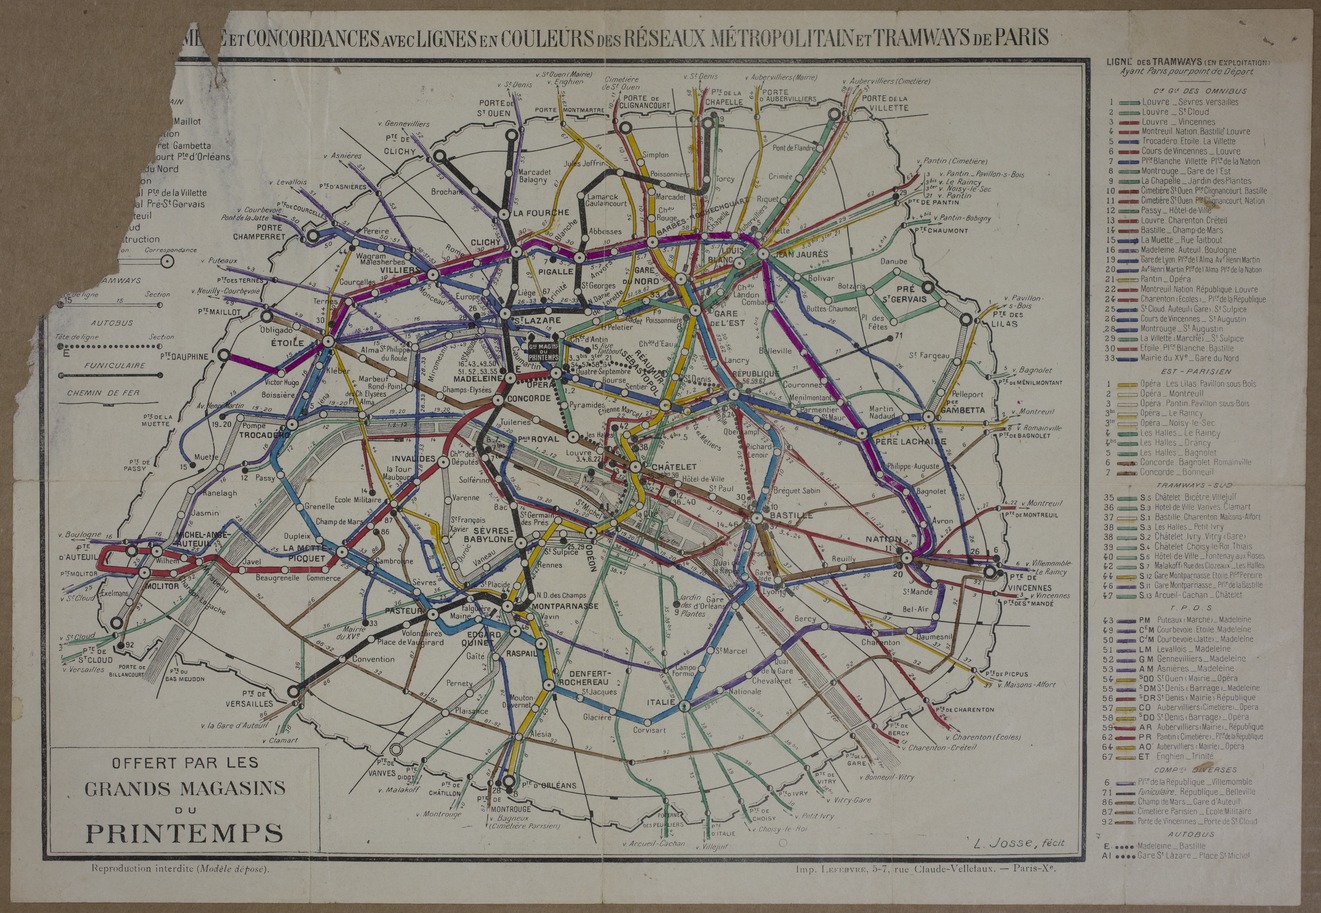 Map of Paris Transportation Routes